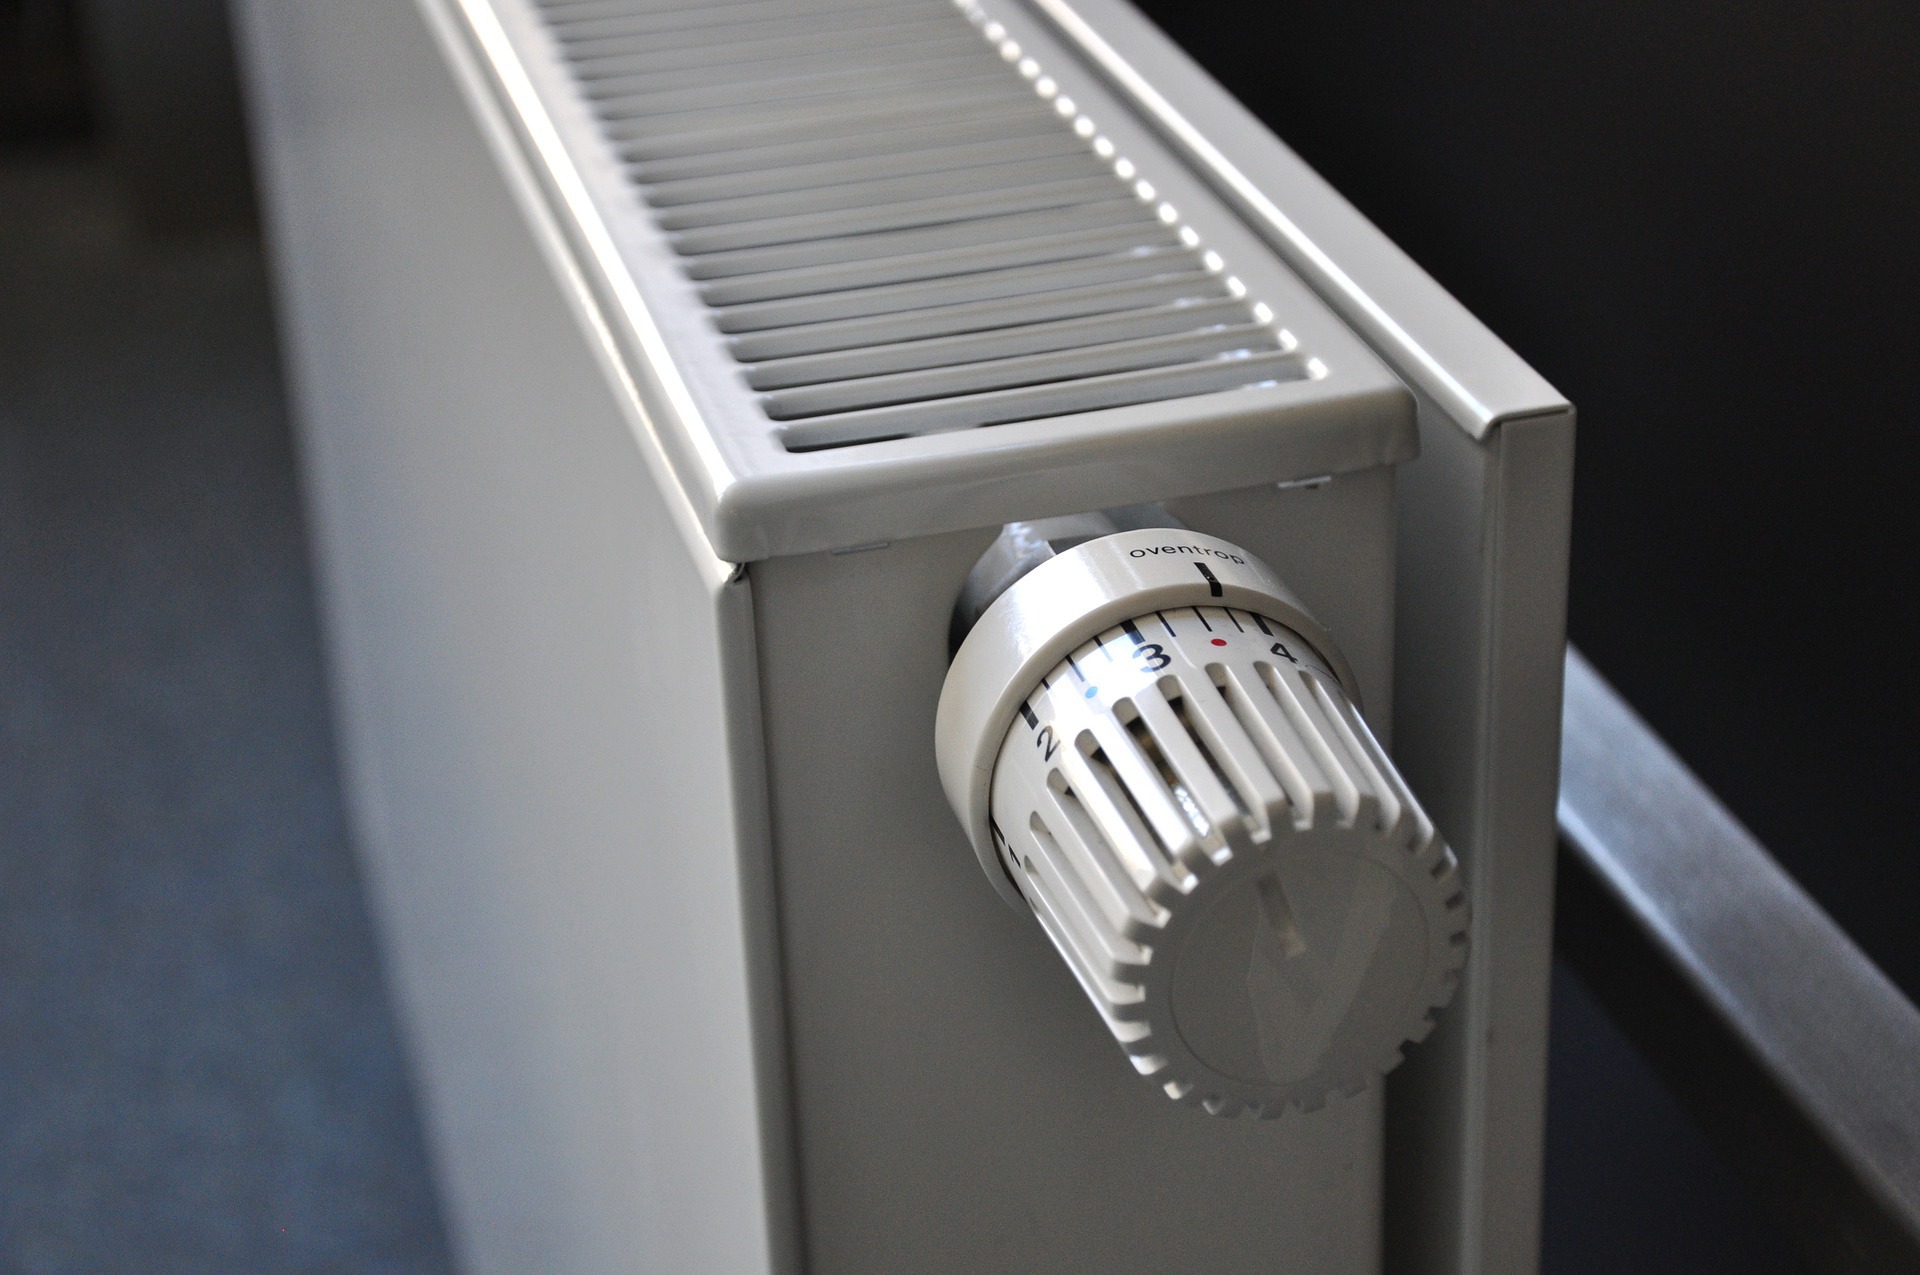 Valvola termostatica: cos'è e come funziona?